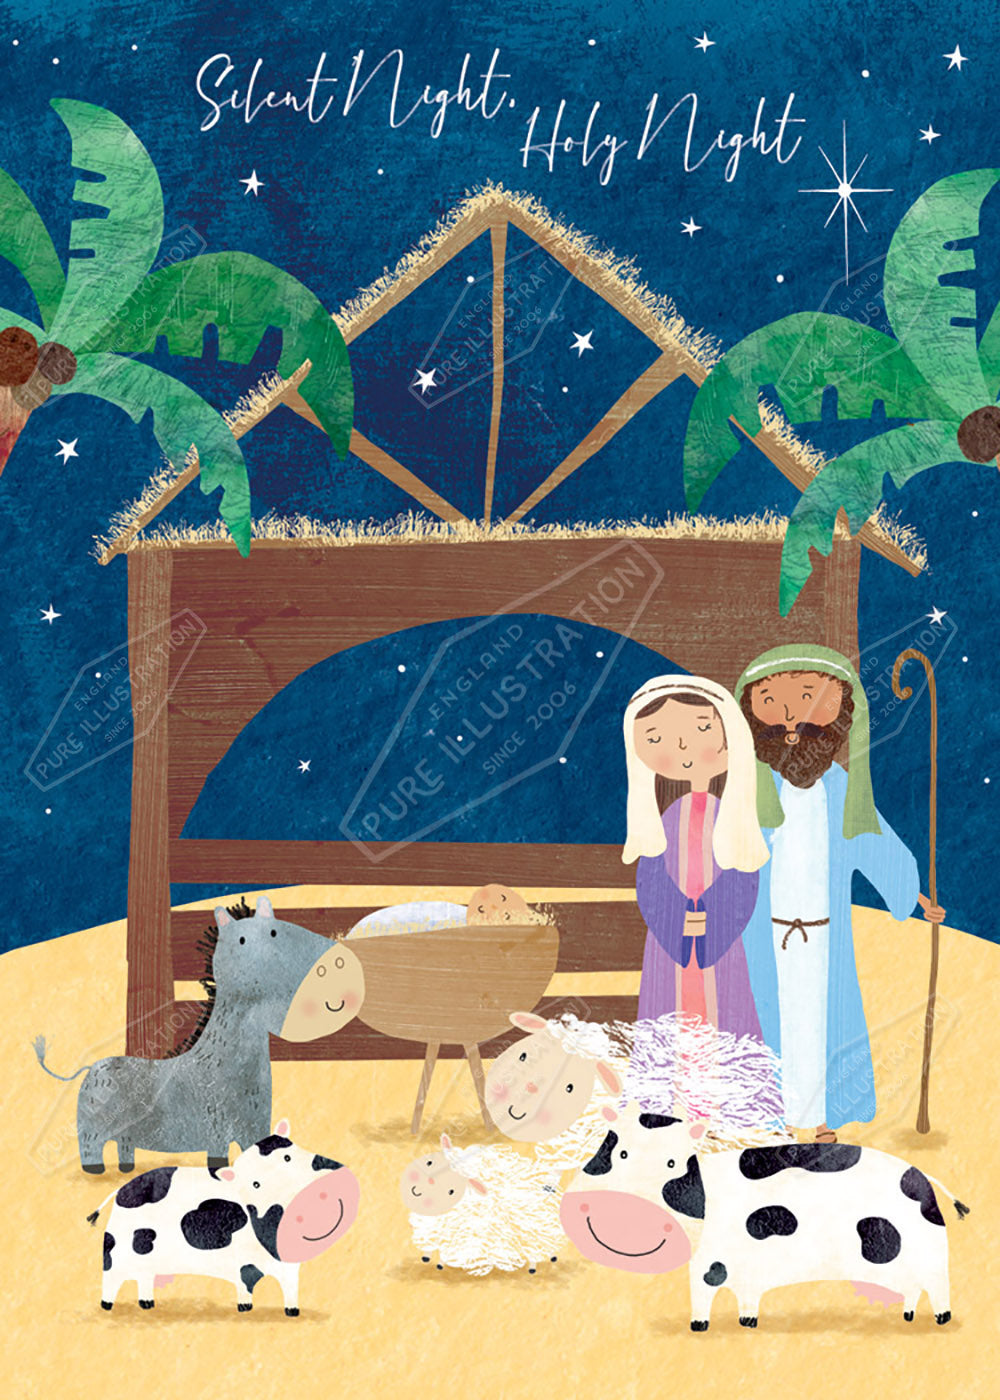 Children's Nativity Scene Illustration by Cory Reid for Pure Art Licensing Agency & Surface Design Studio